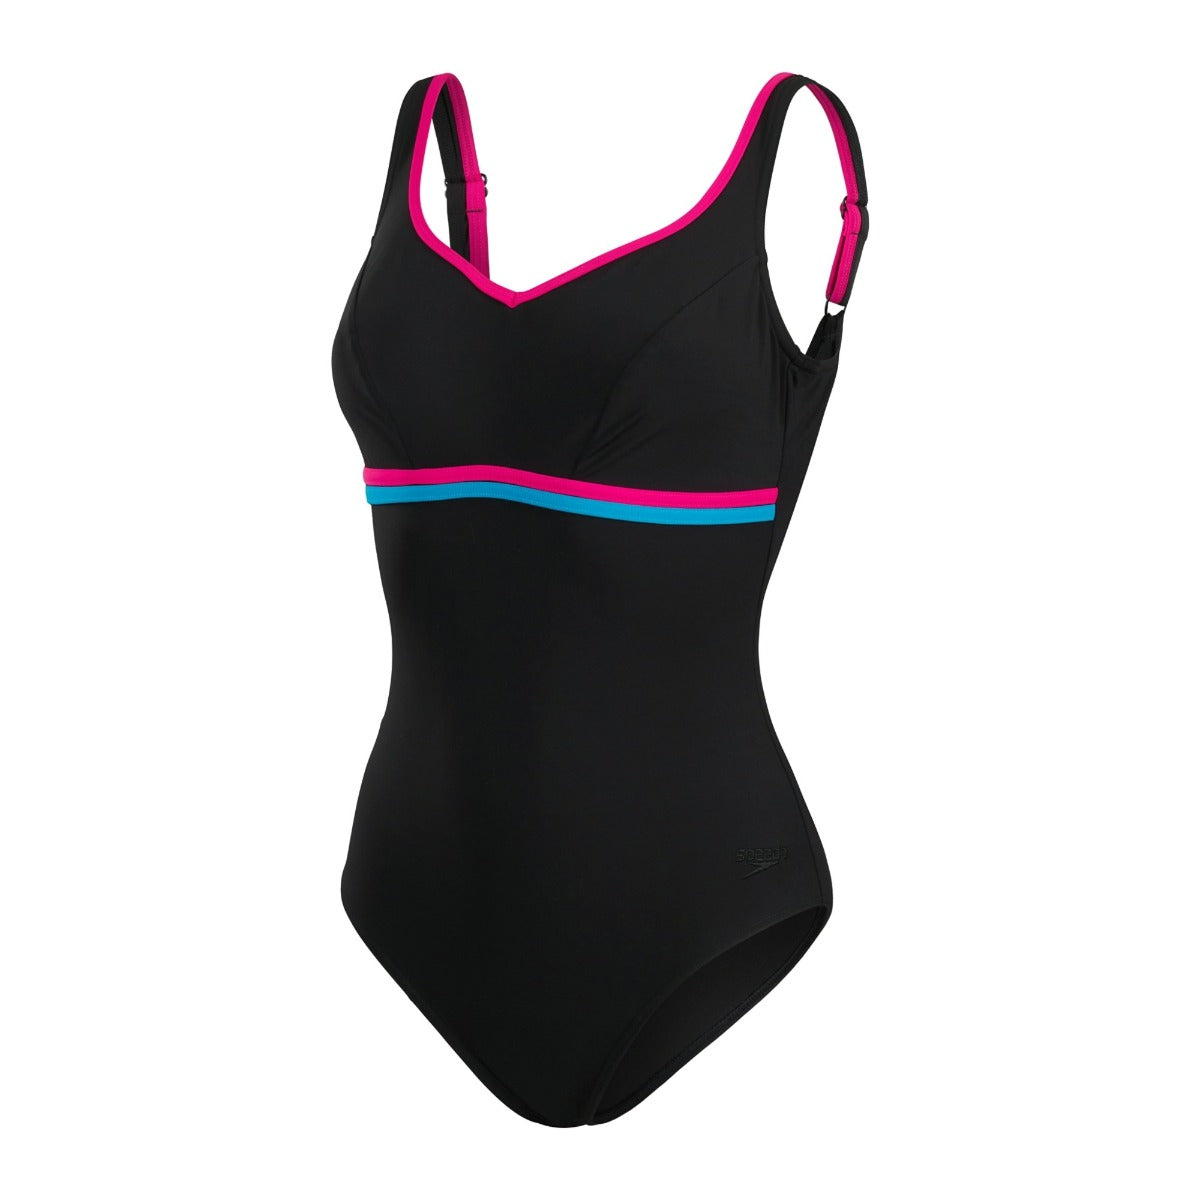 Speedo Solid Shaping Contourluxe Women's Swimsuit (Black Pink)